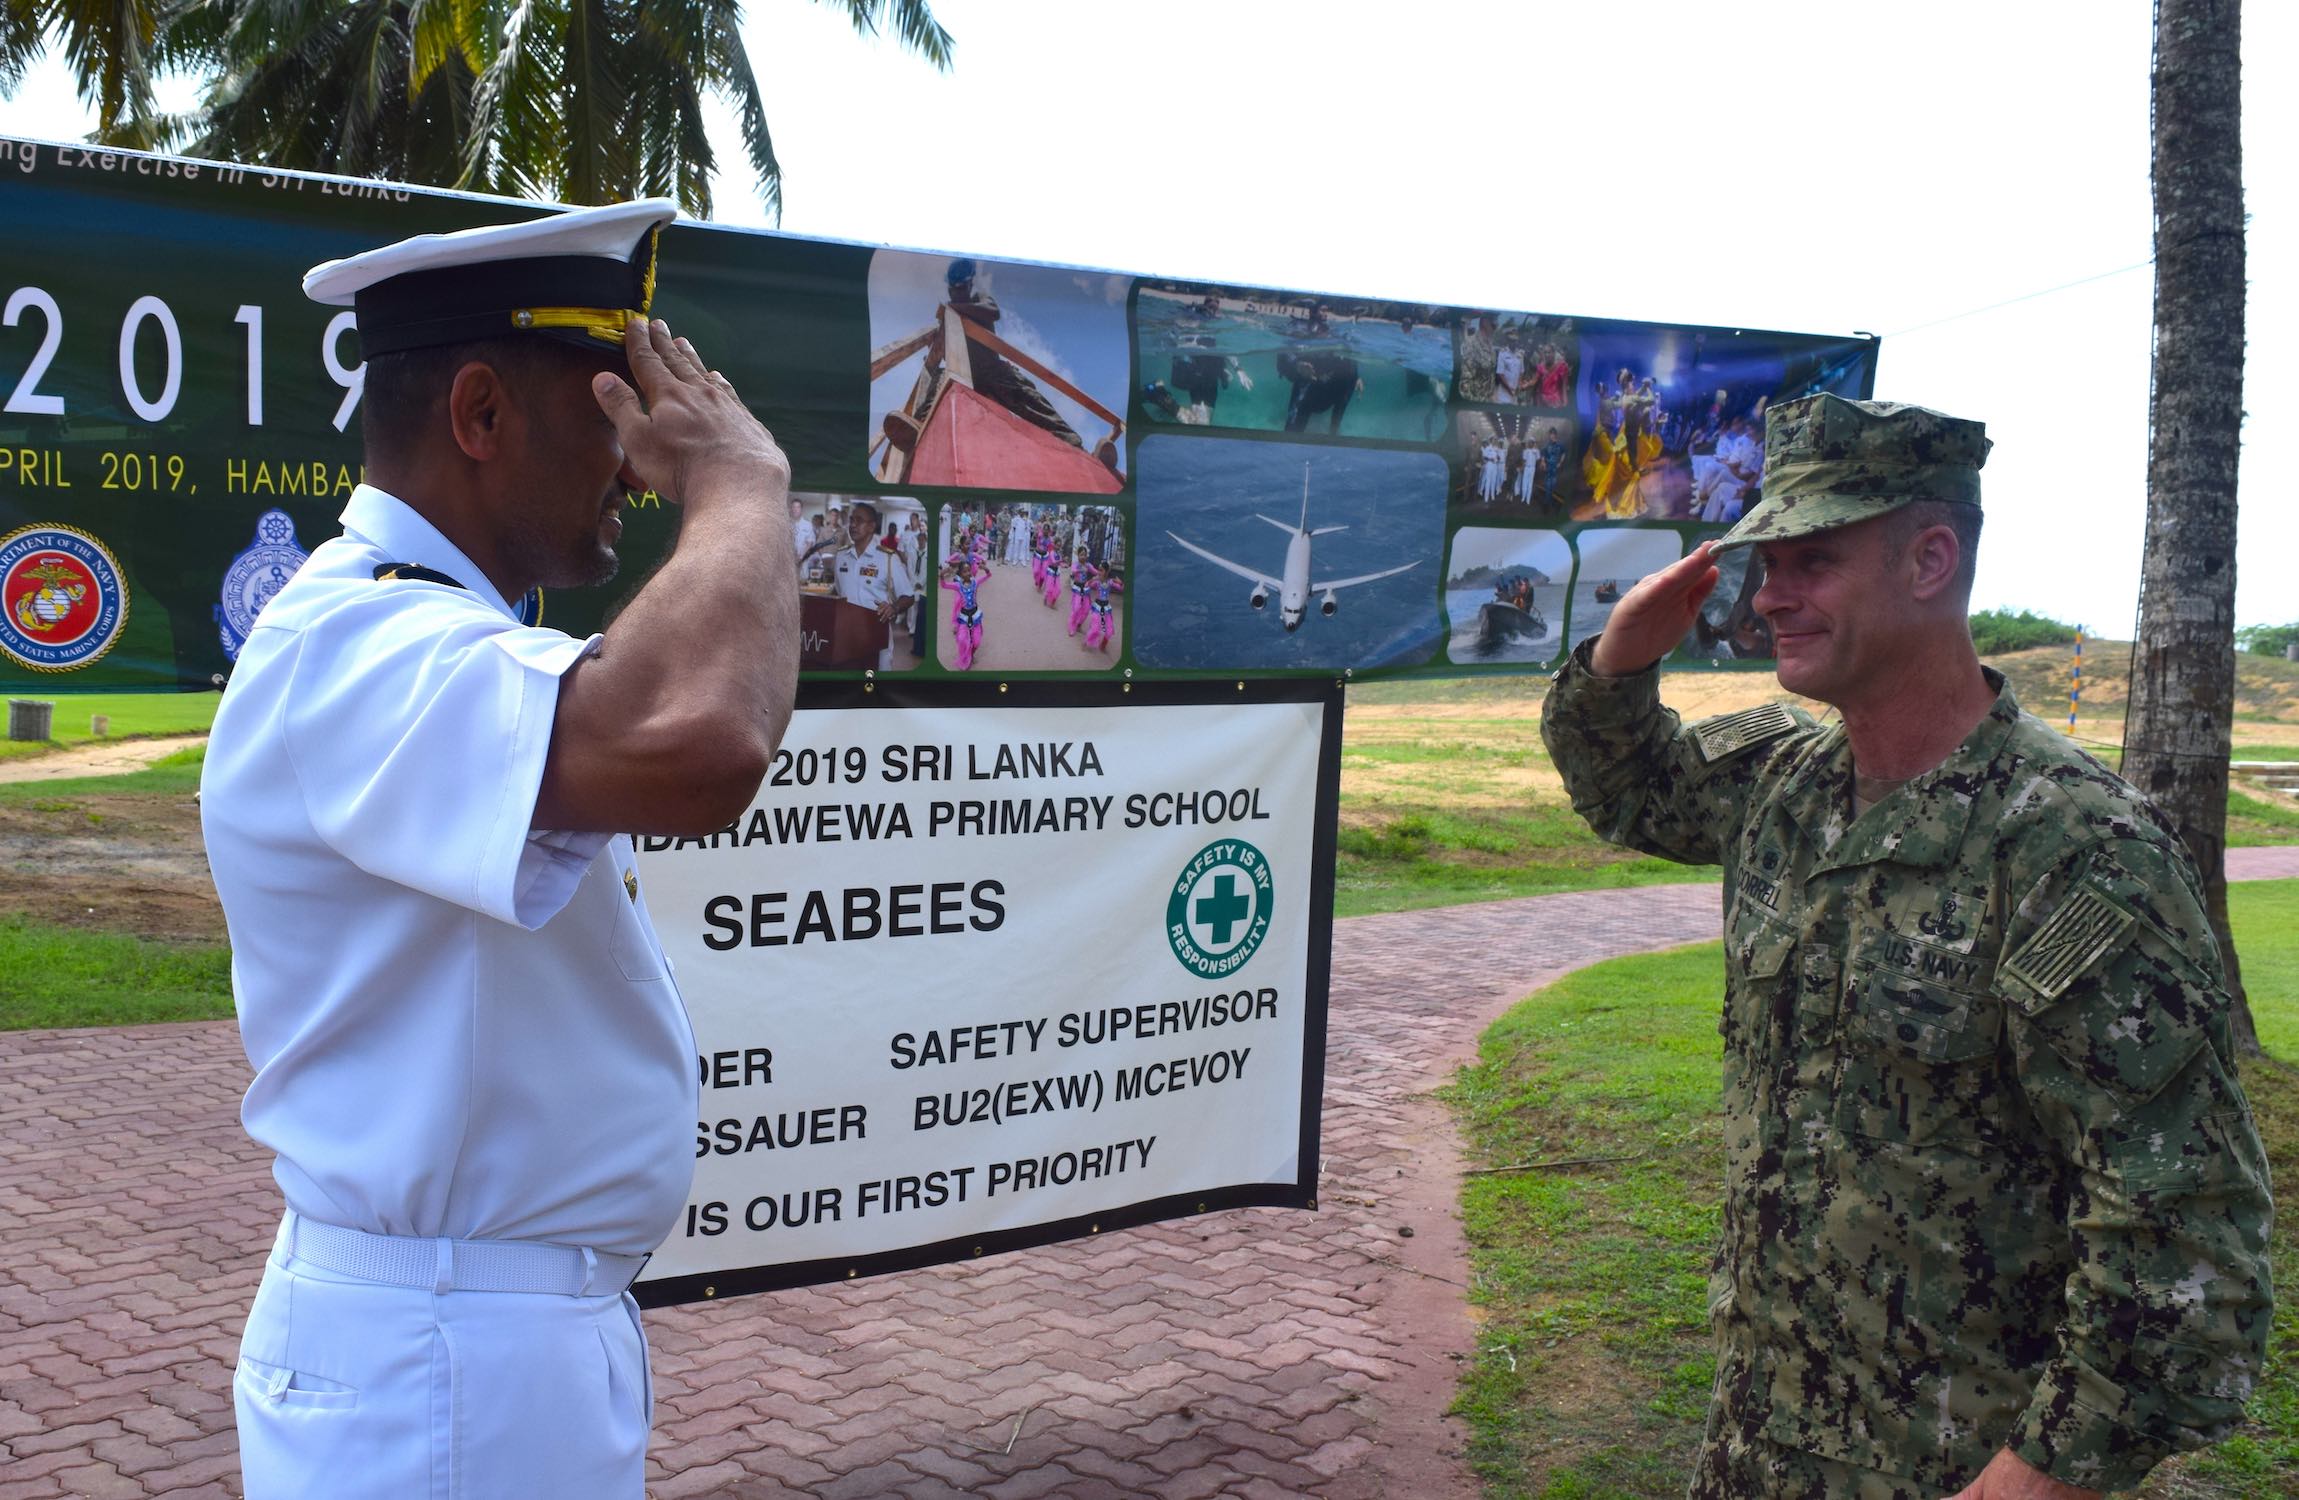 US and Sri Lanka Navy exercise